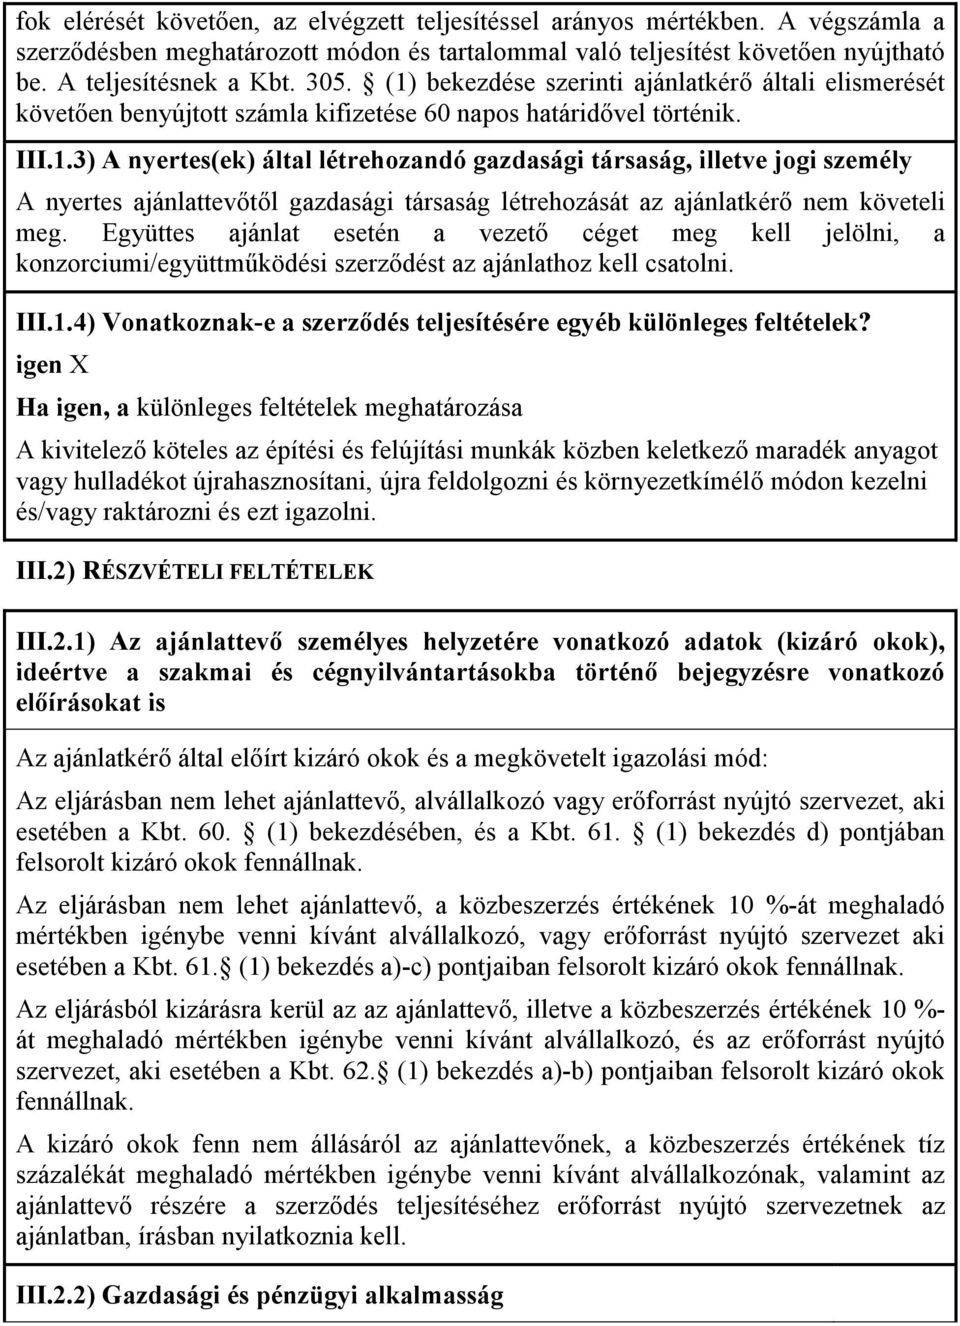 Együttes ajánlat esetén a vezetı céget meg kell jelölni, a konzorciumi/együttmőködési szerzıdést az ajánlathoz kell csatolni. III.1.